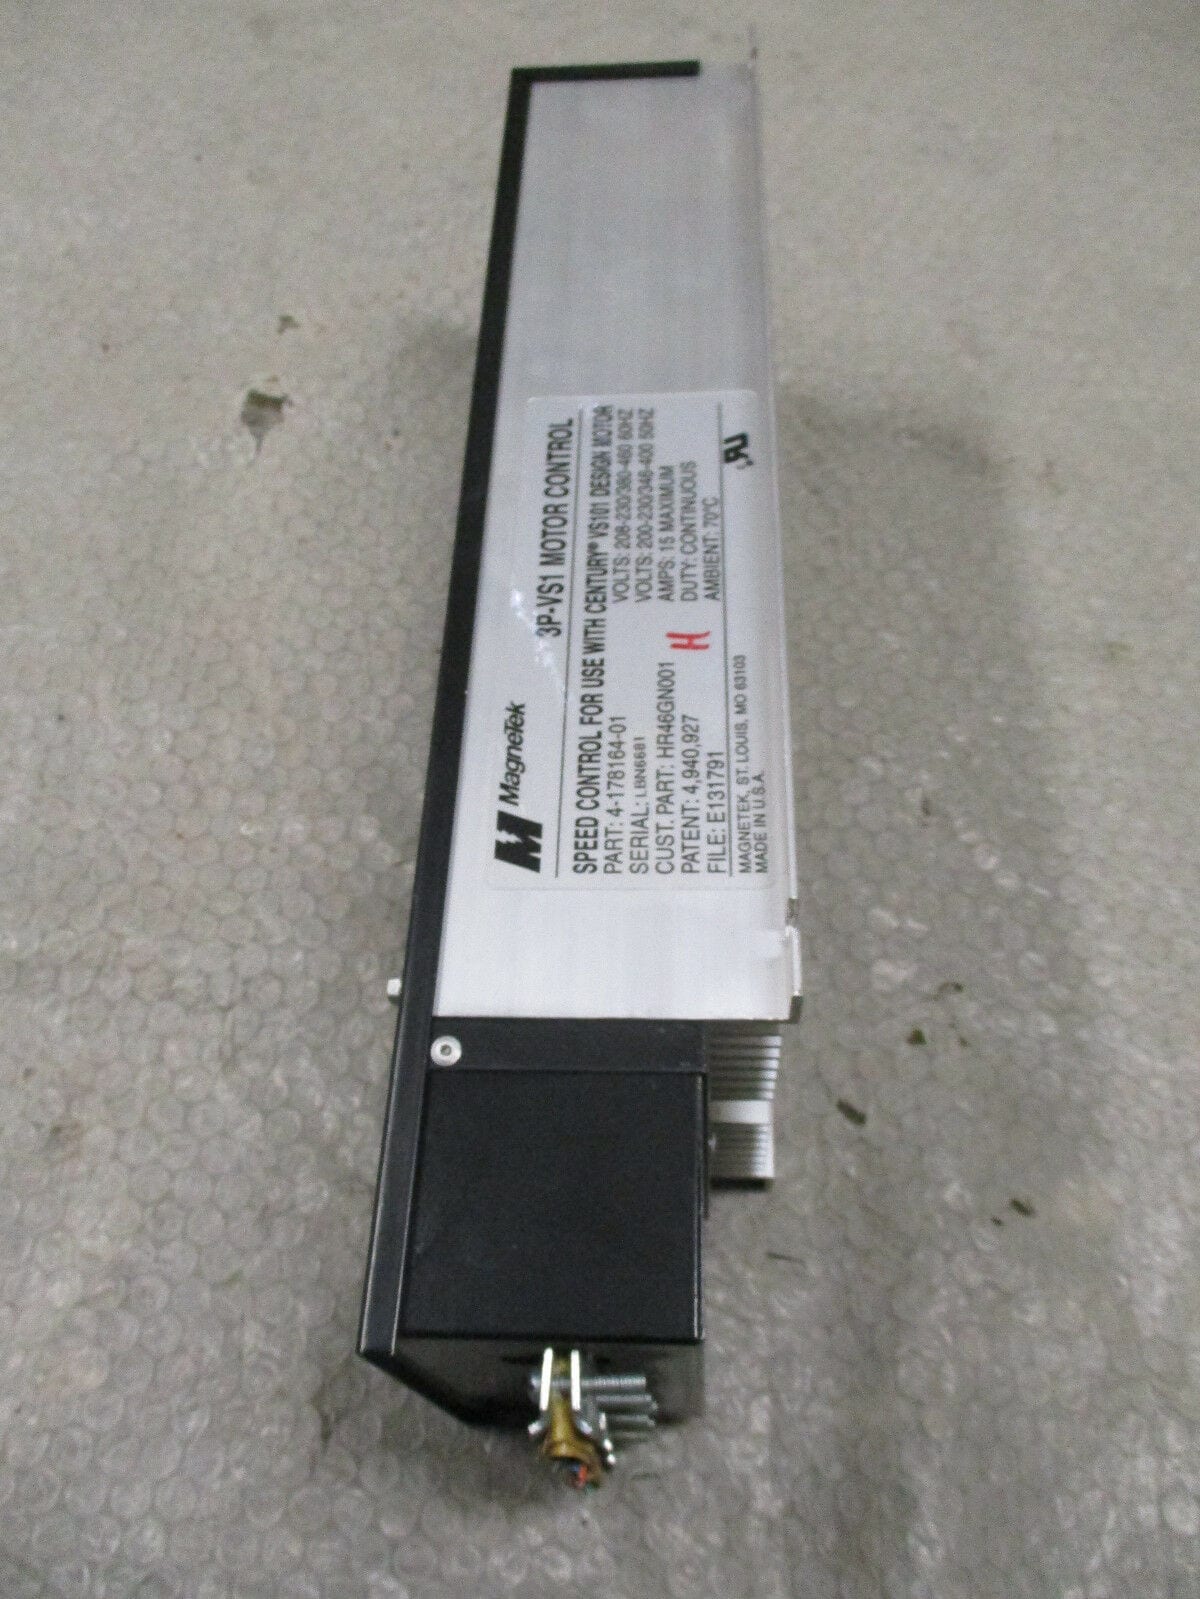 Magnetek 3P-VS1 208-230/460 Volt Motor Control 